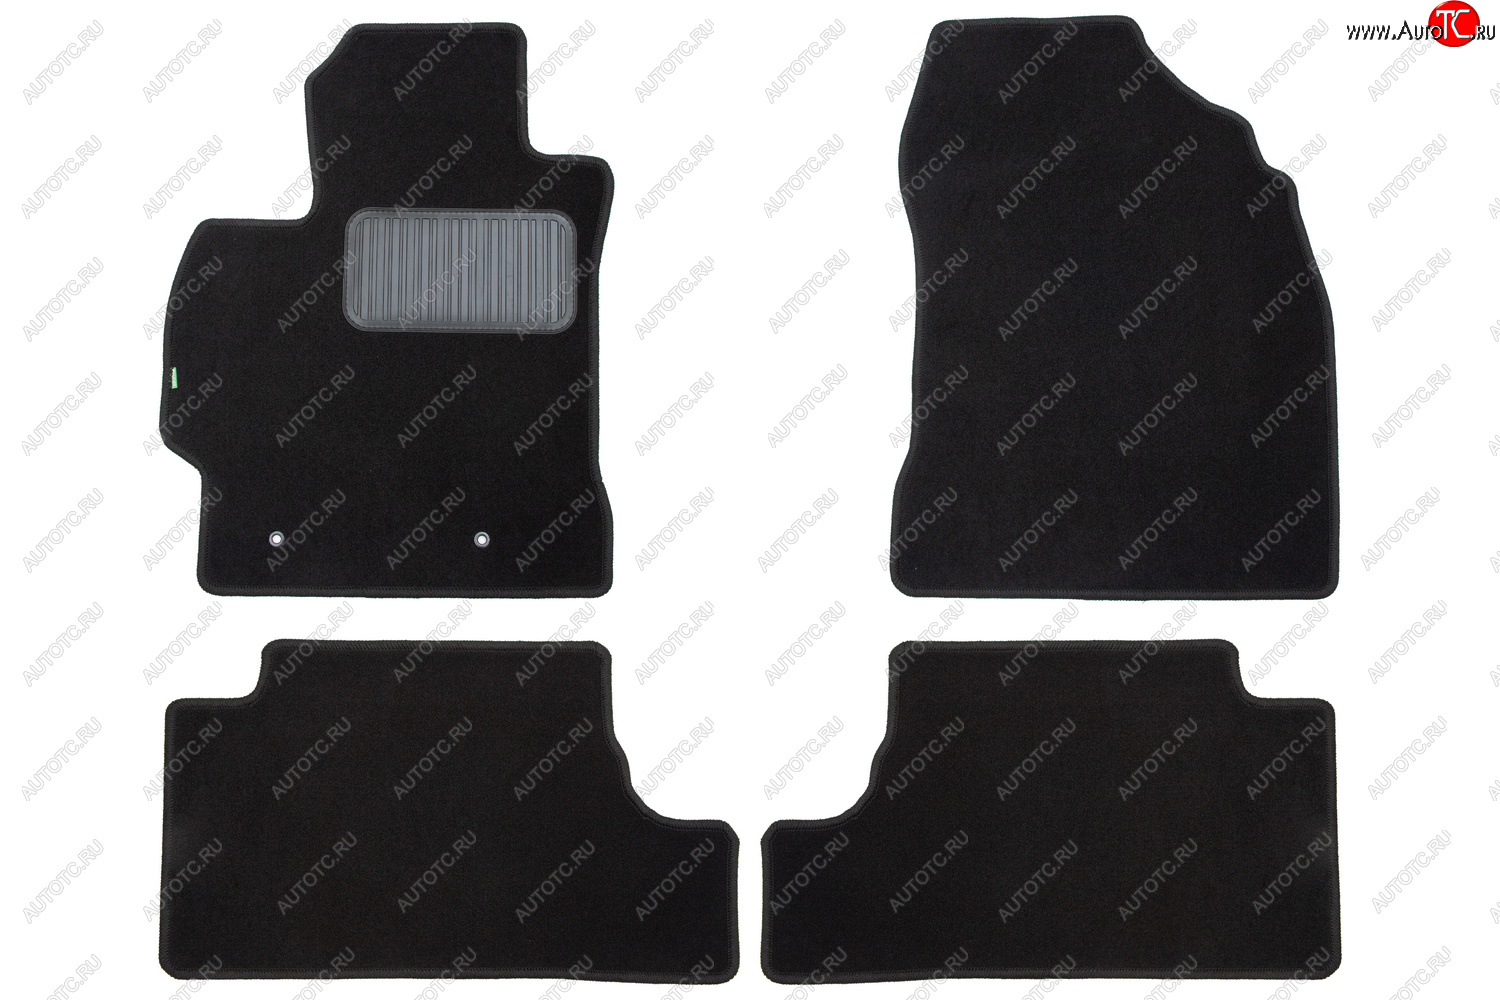 3 979 р. Комплект ковриков в салон (АКПП, чёрные, текстиль) Klever Standard  Toyota Land Cruiser Prado  J120 (2002-2009)